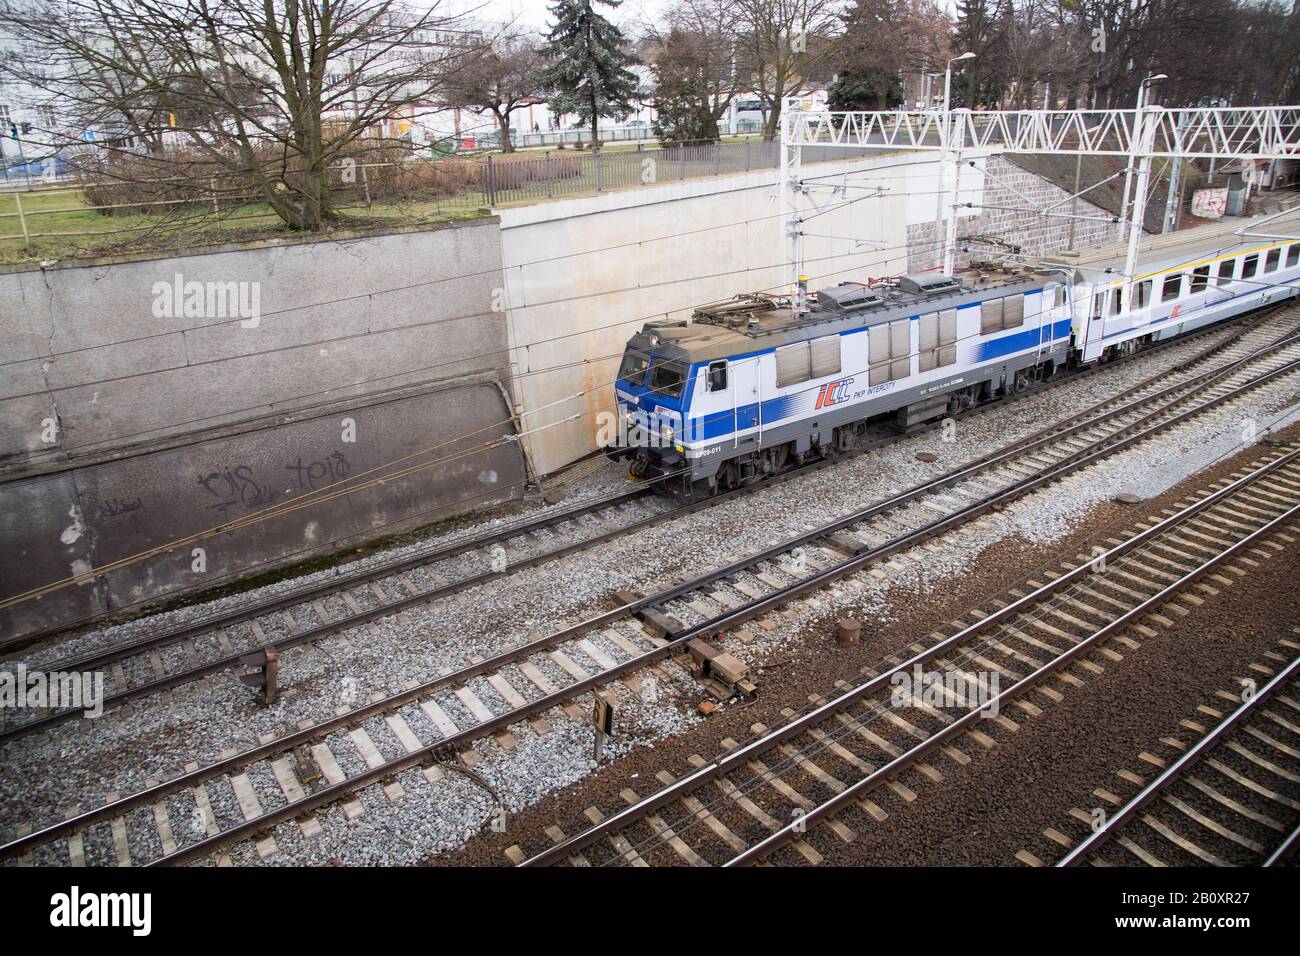 Train in Gdansk, Poland. February 19th 2020 © Wojciech Strozyk / Alamy Stock Photo Stock Photo